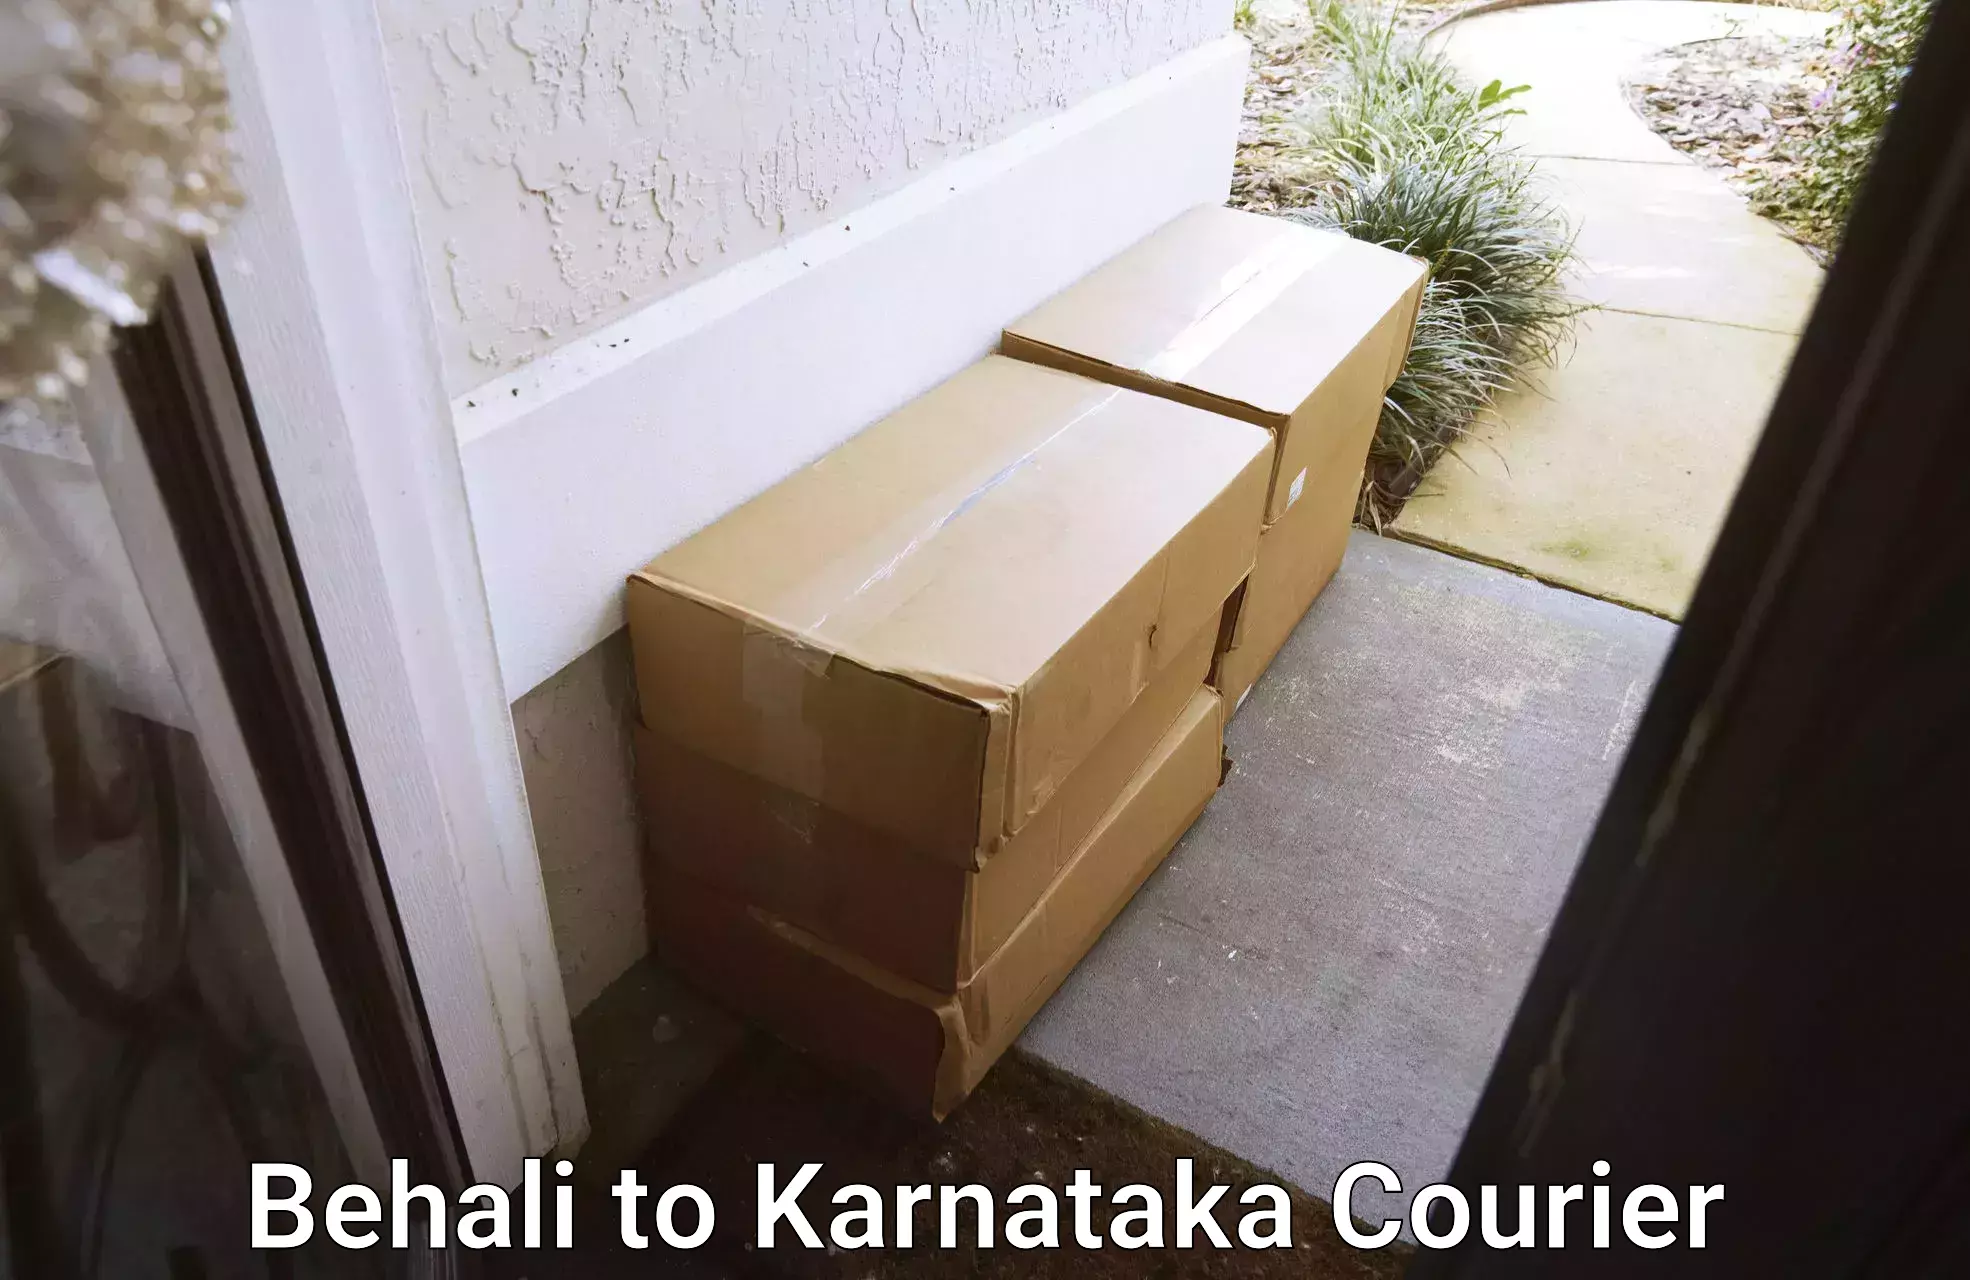 Ocean freight courier Behali to Karnataka